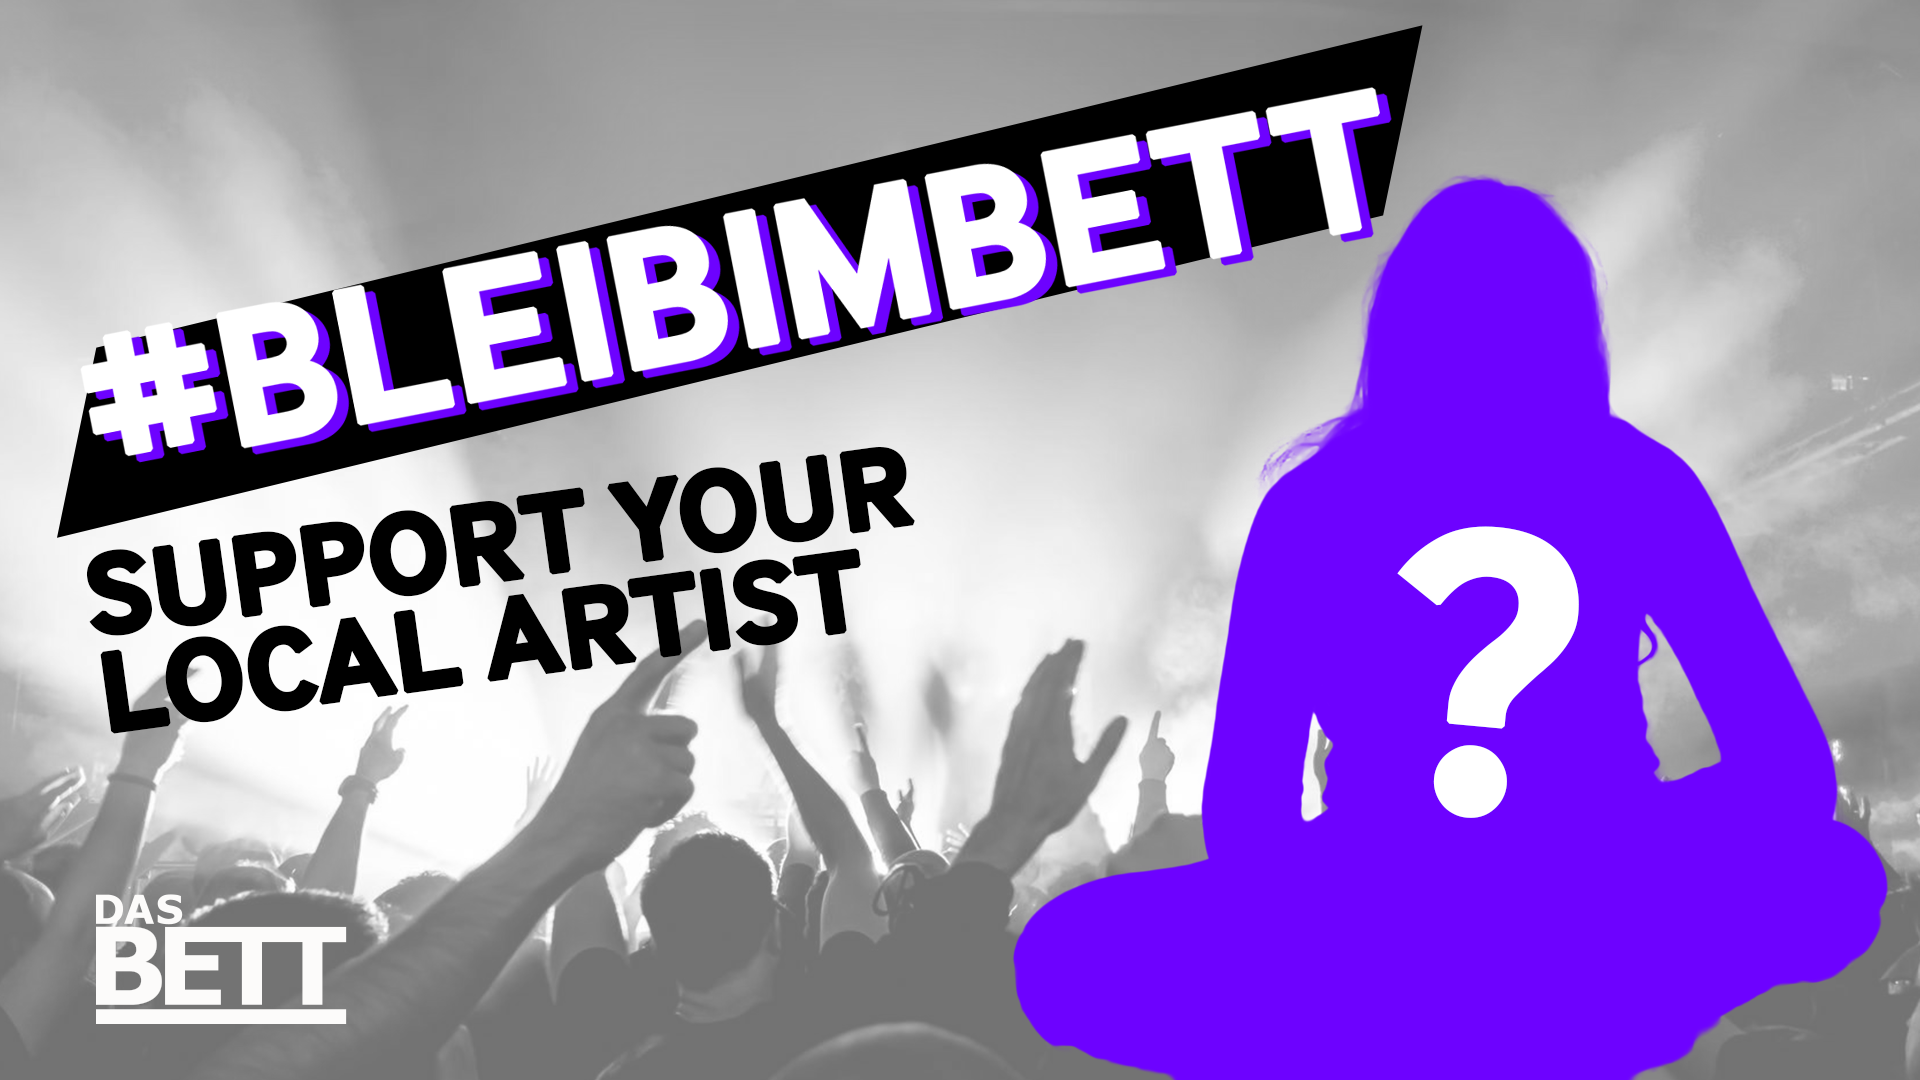 #BLEIBIMBETT – Support Your Local Artist